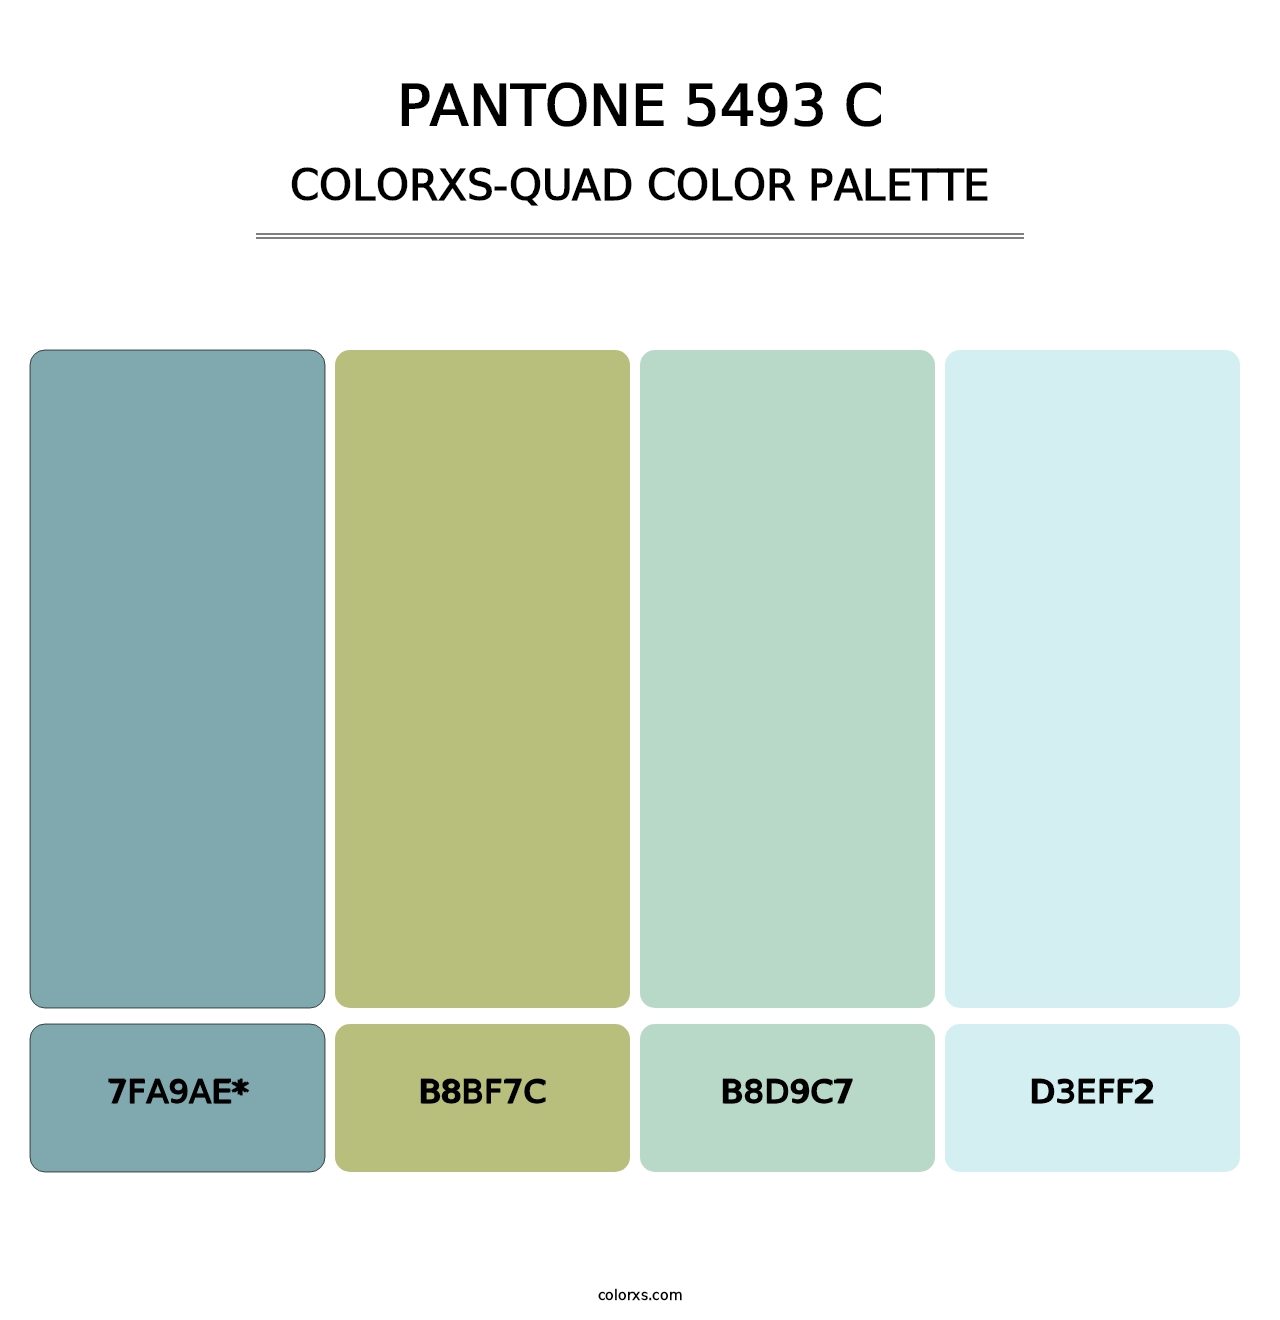 PANTONE 5493 C - Colorxs Quad Palette